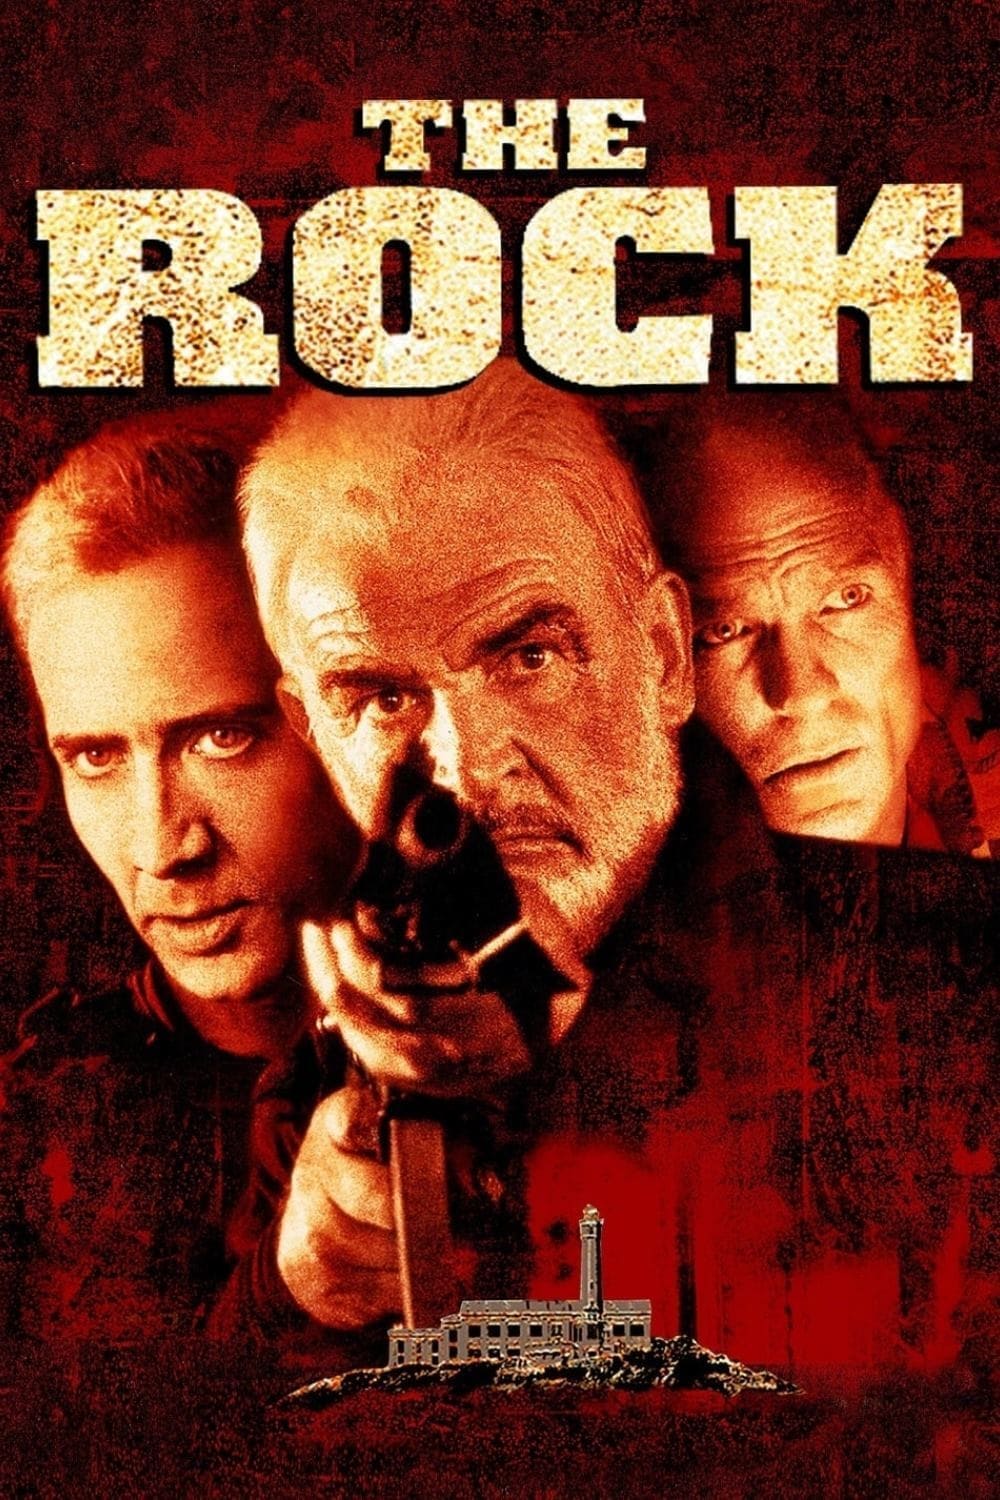 The Rock - Fels der Entscheidung (1996)